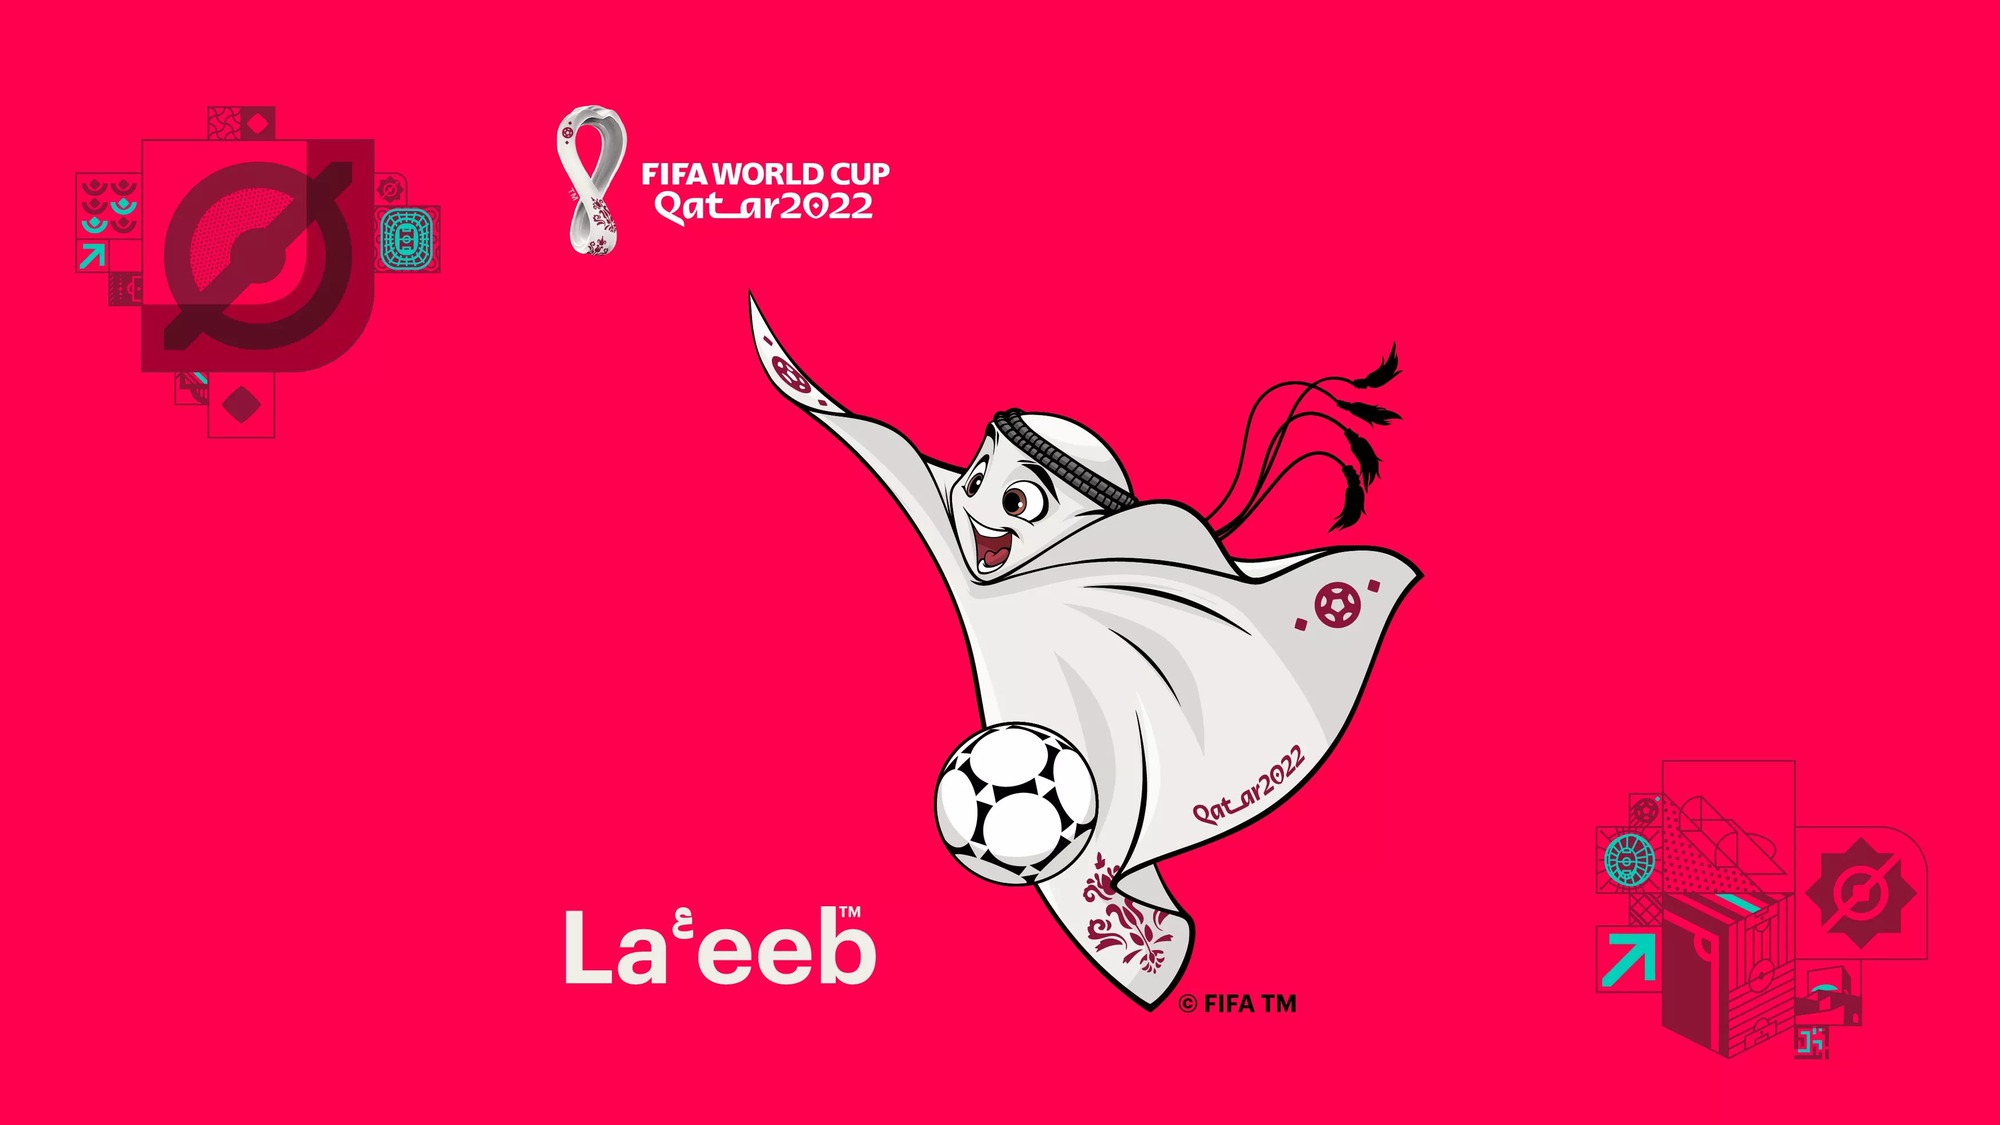 World Cup 2022: Gặp gỡ La'eeb, linh vật chính thức của World Cup